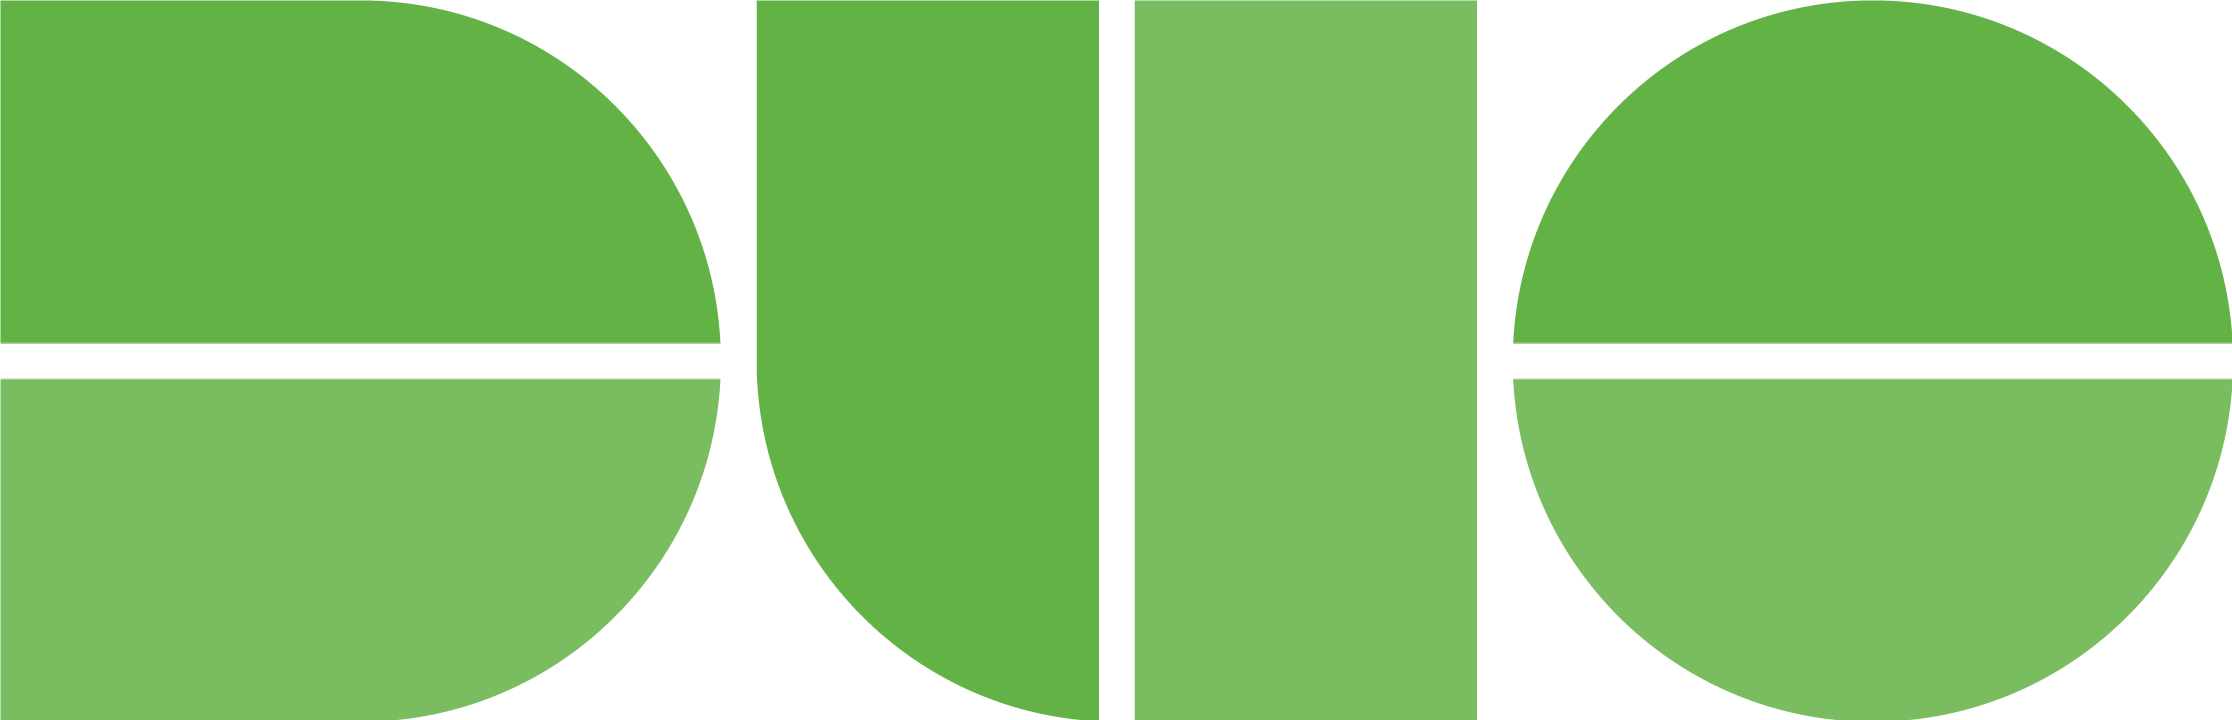 Duo Logo - Green.png